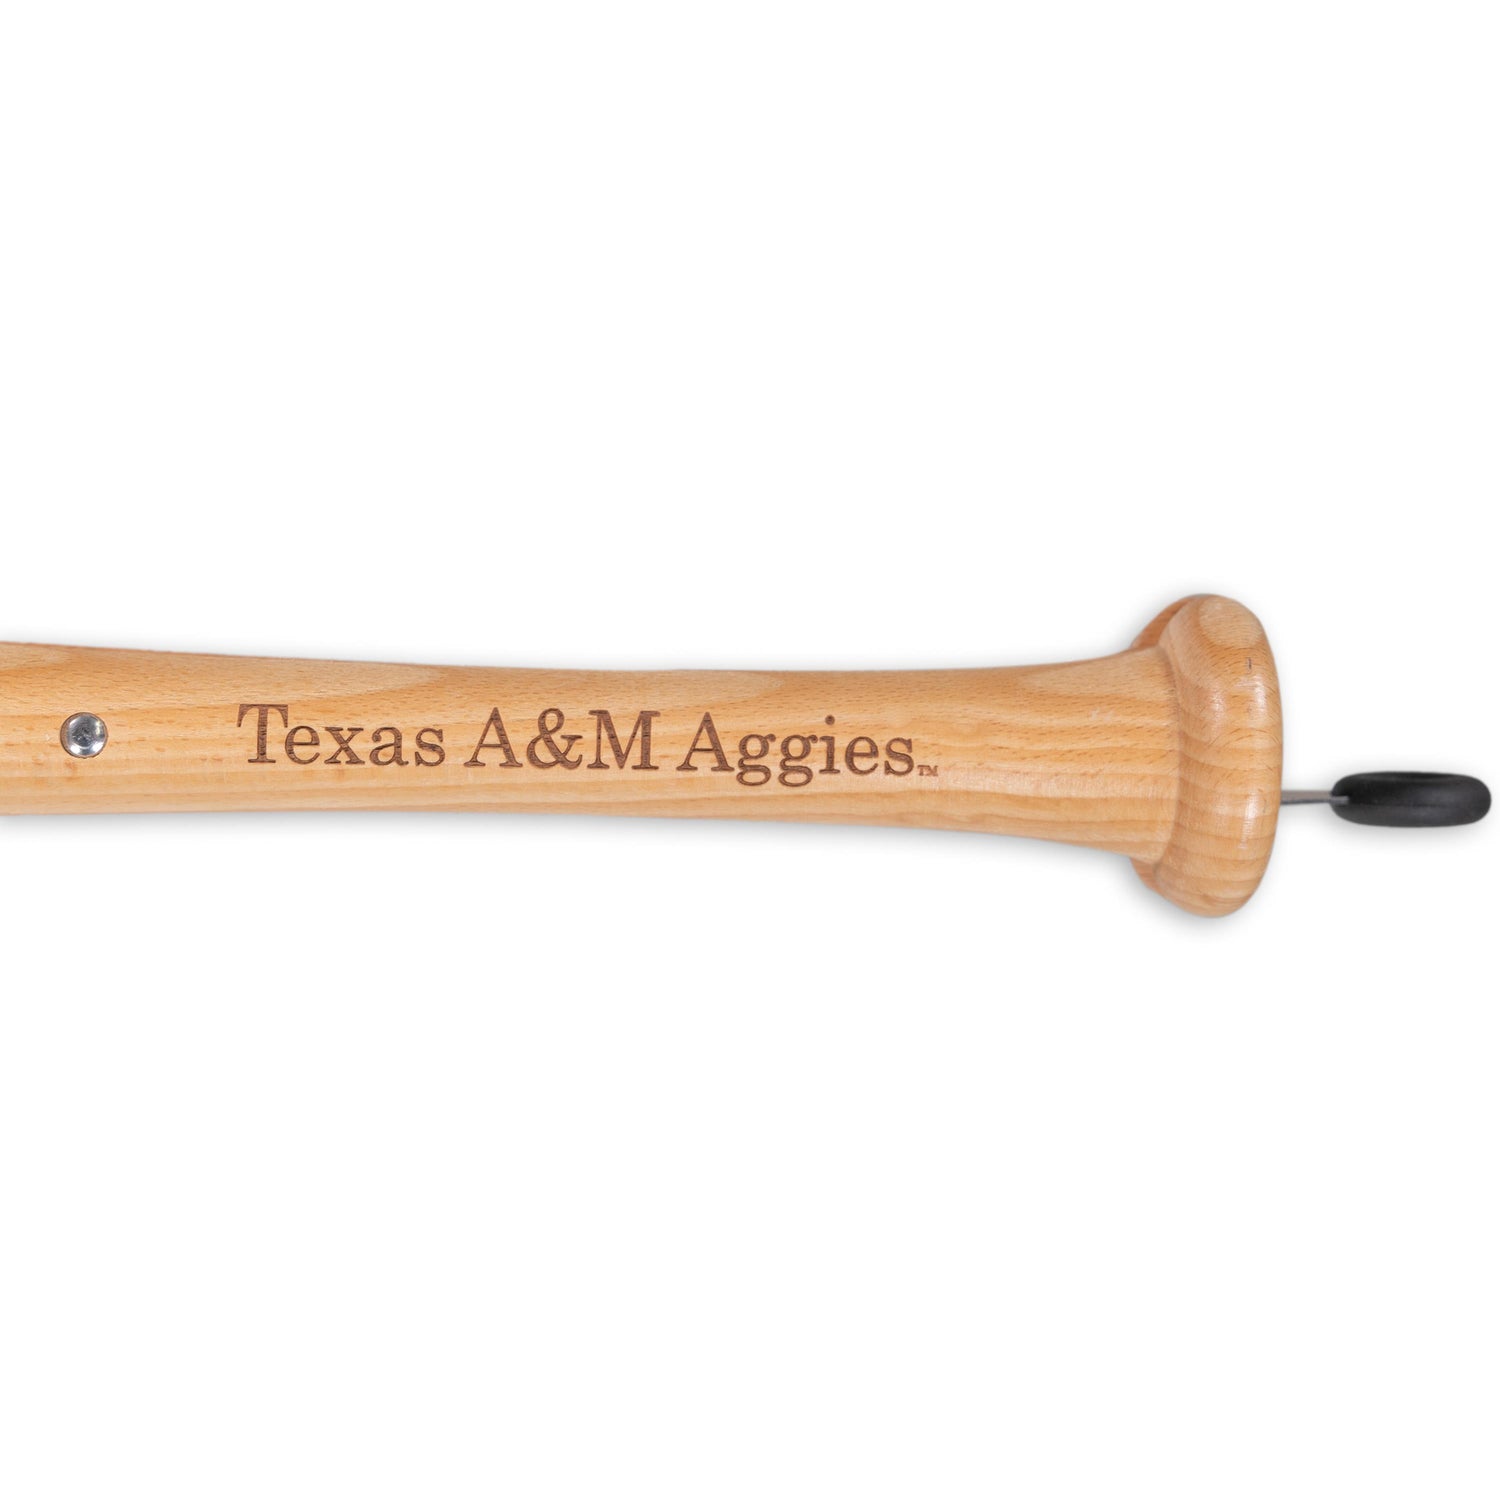 Texas A&M Aggies Baseball Bbq Tongs